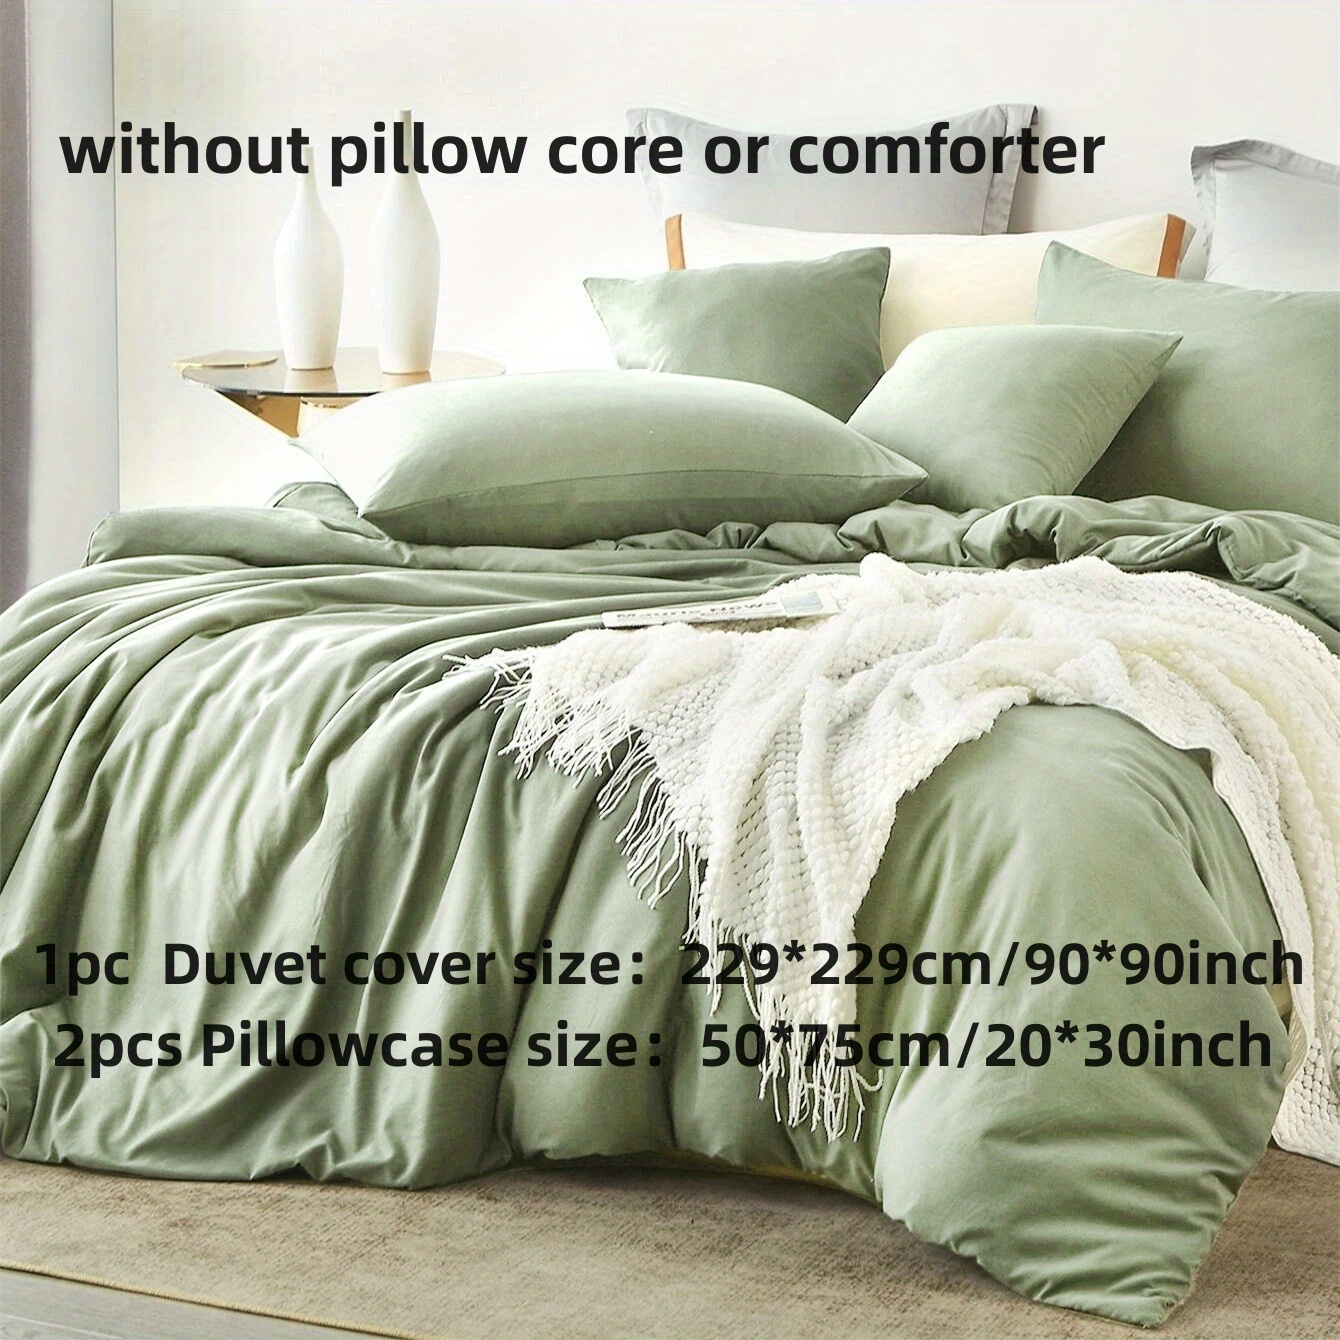 2/3pcs Brushed Solid Color Duvet Cover Set (1pc*Duvet Cover + 1pc/2pcs*Pillowcase, No Pillow Core)